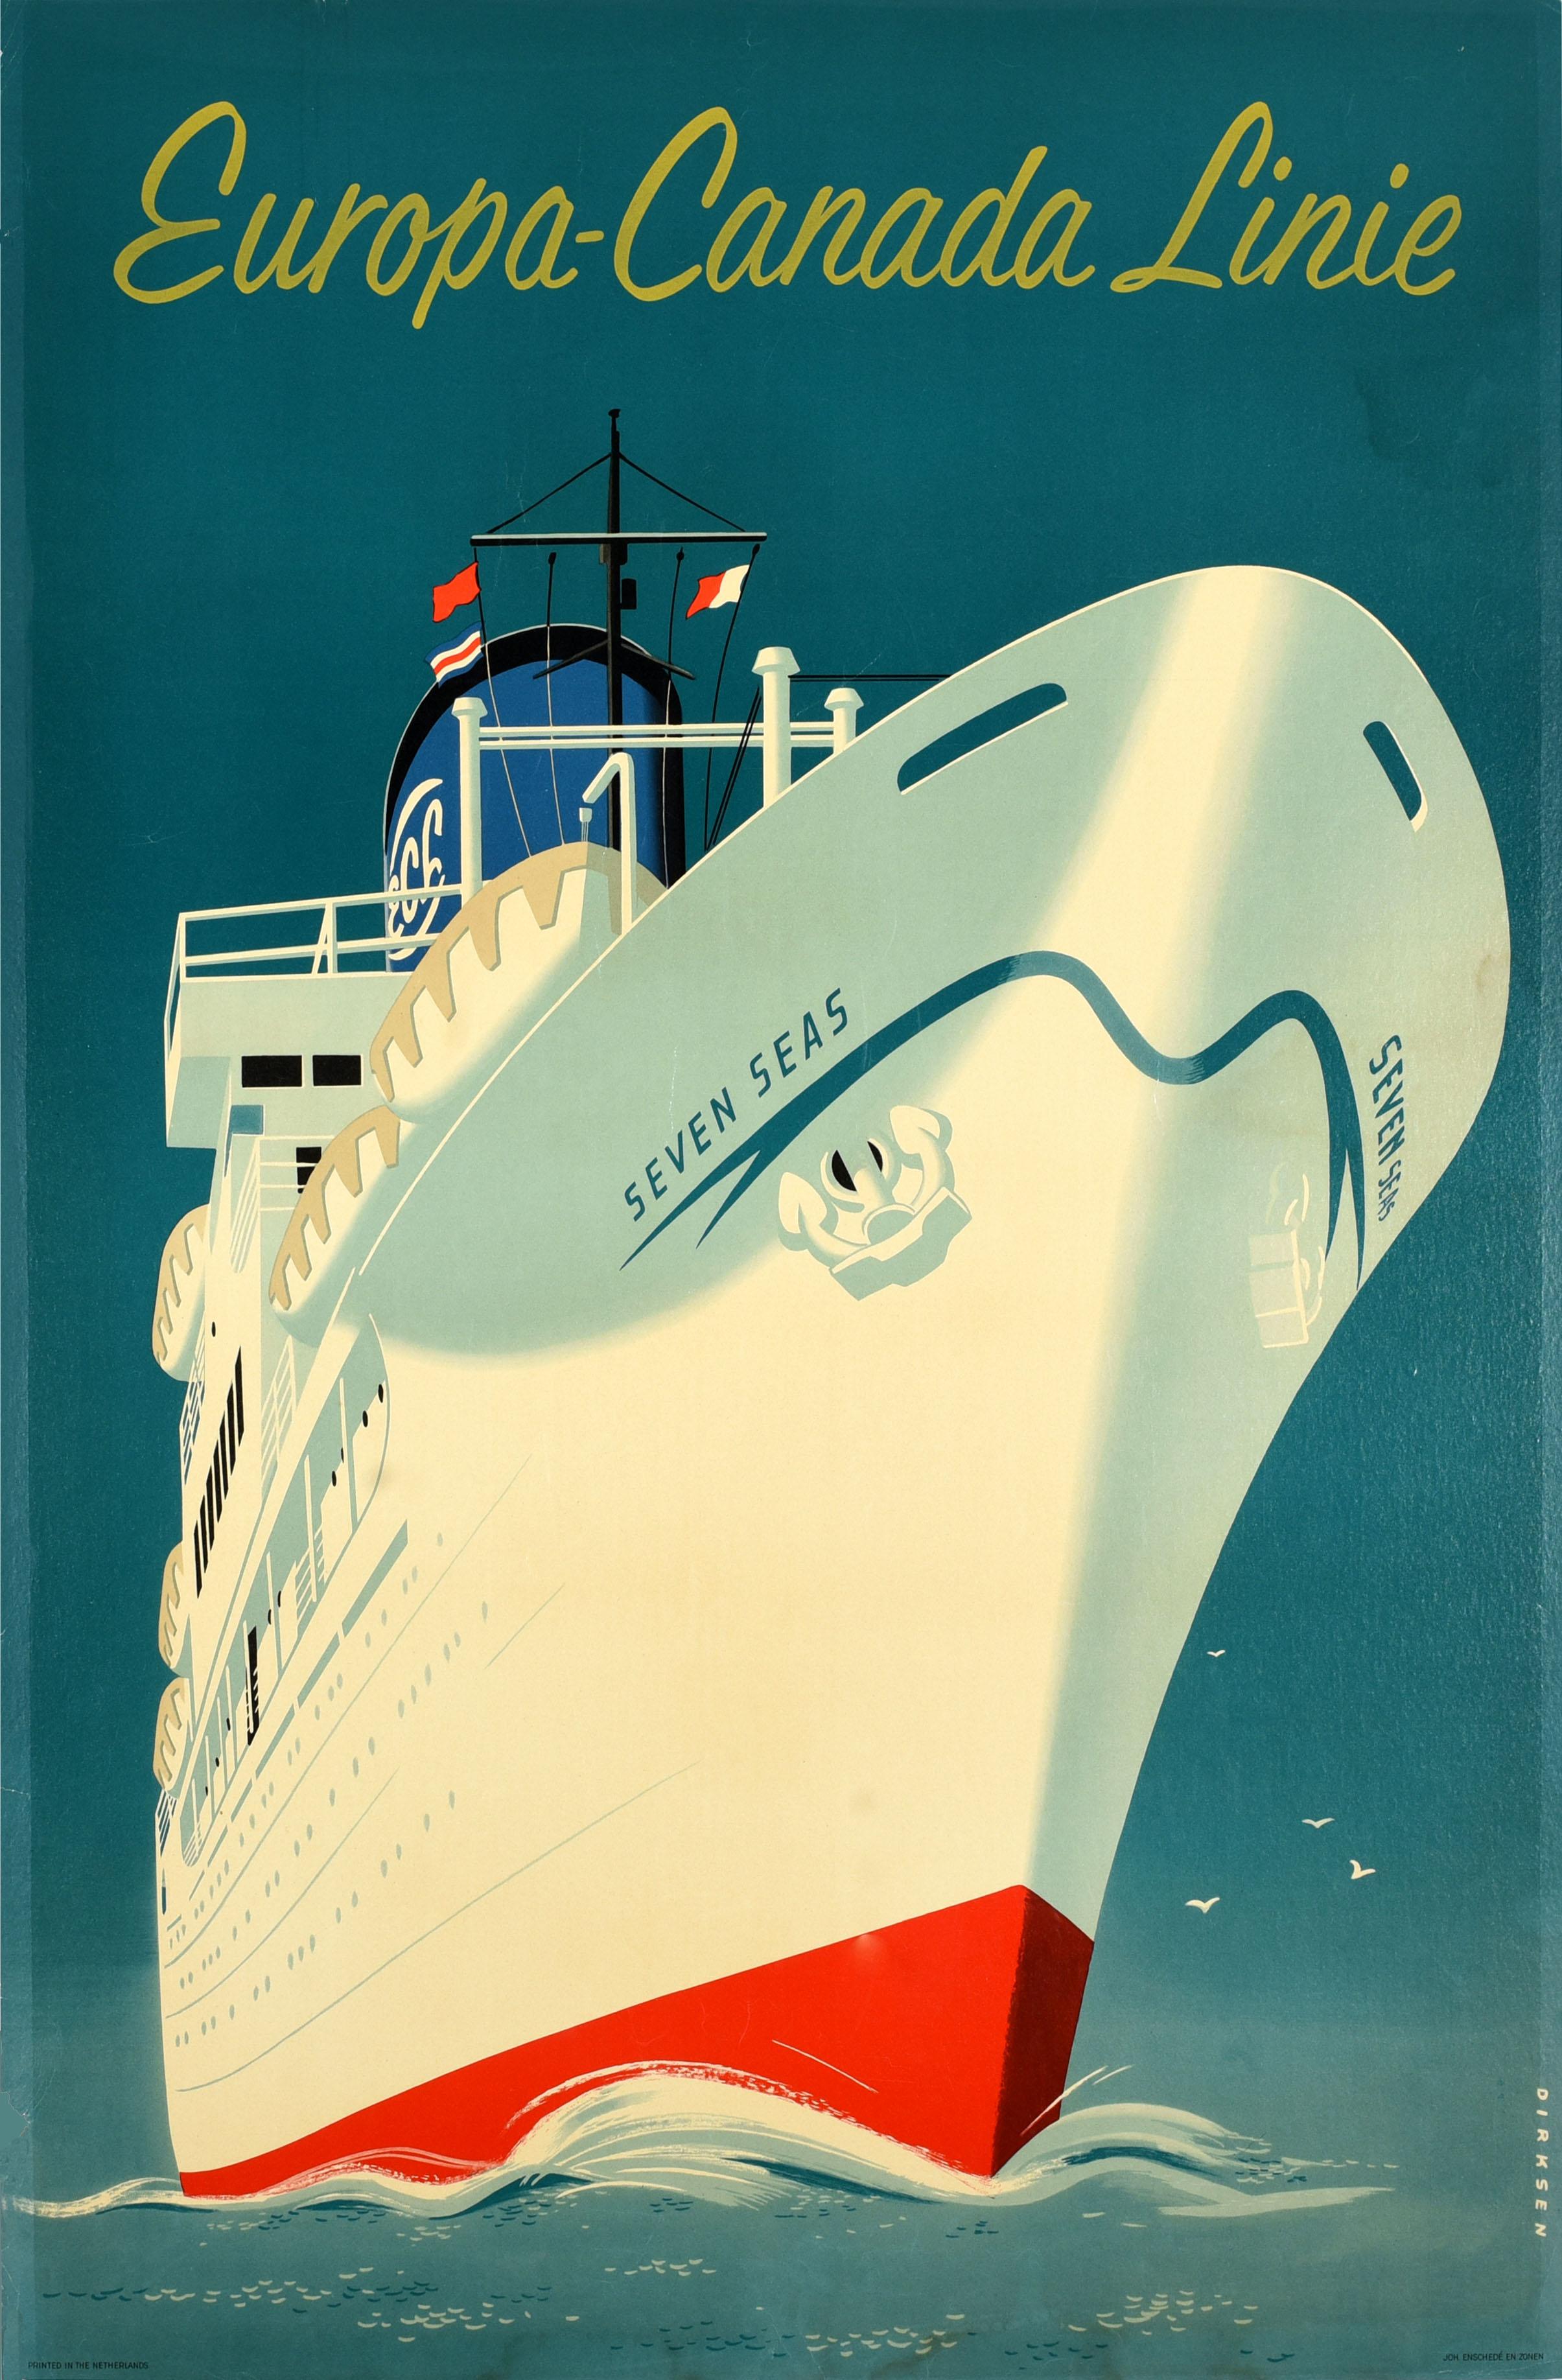 Print Reyn Dirksen - Affiche publicitaire originale de voyage Europa Canada Shipping Line Dirksen